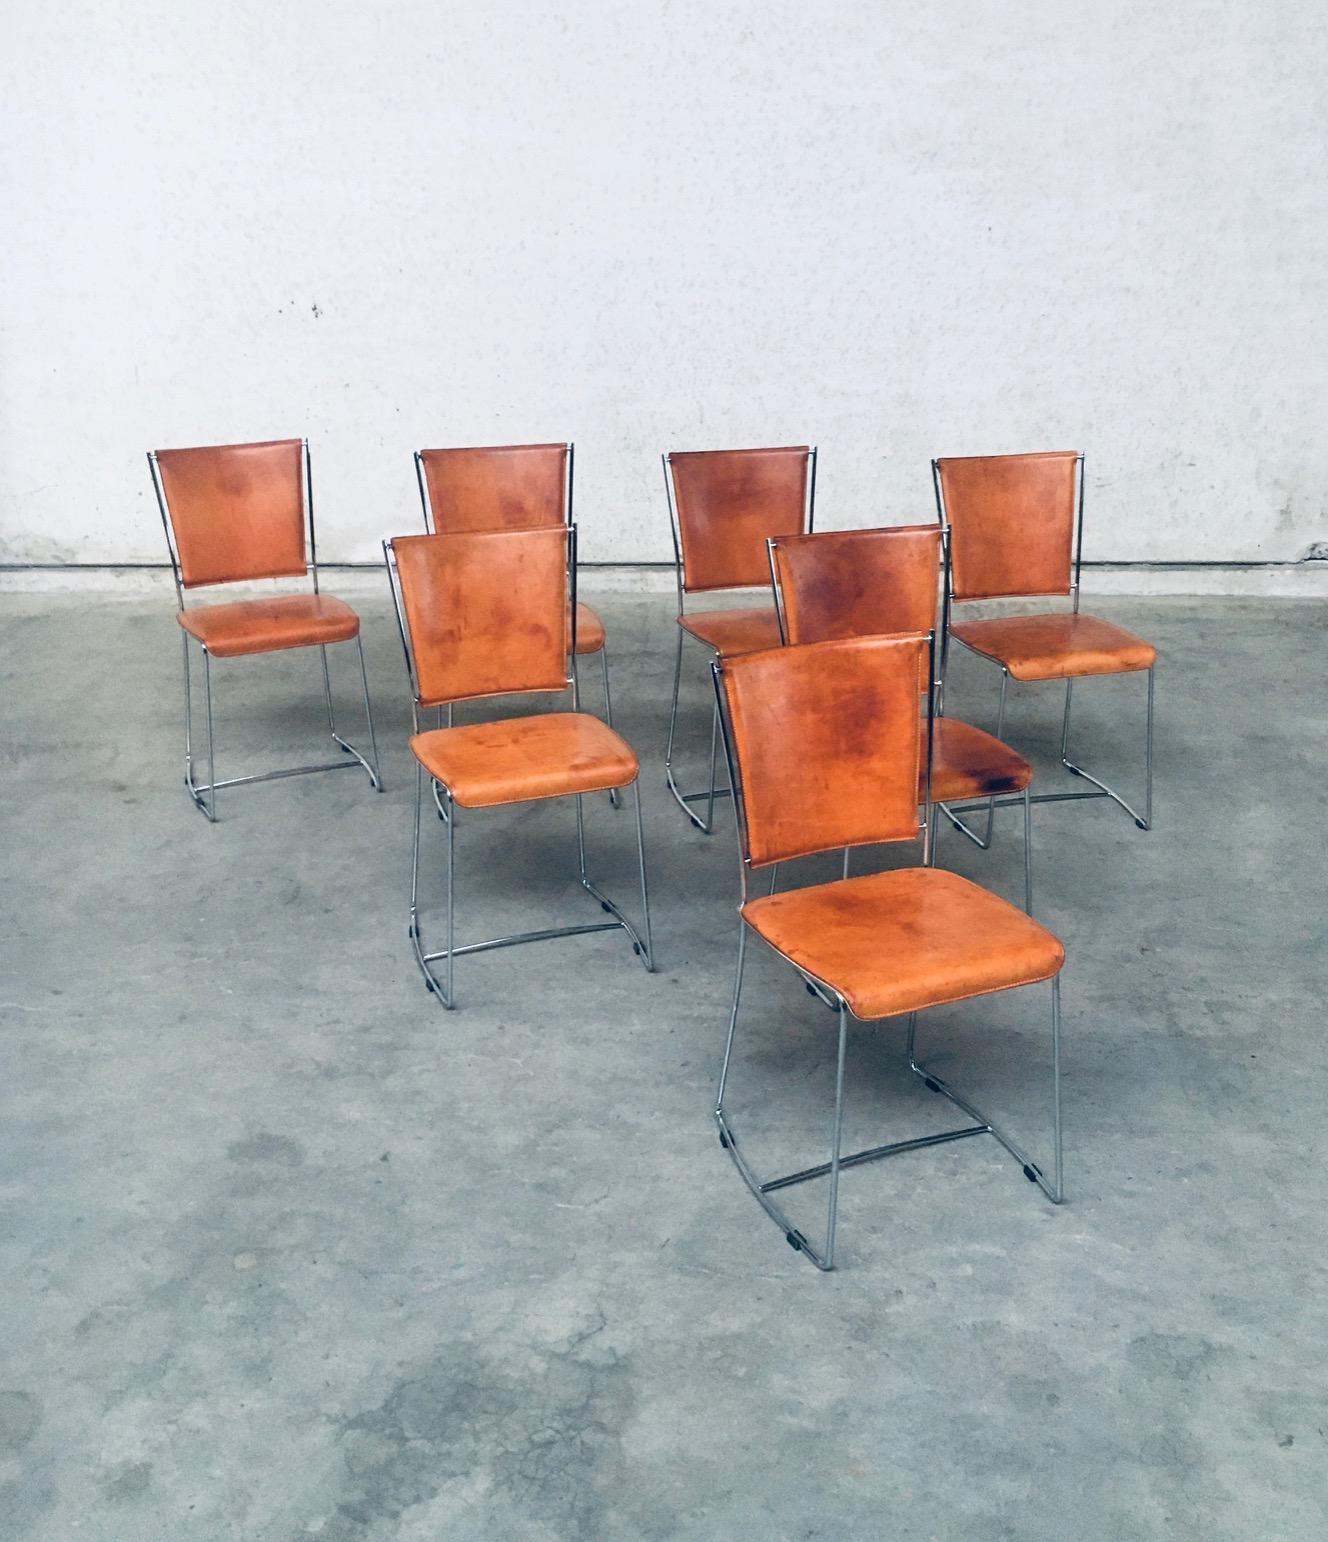 Vintage Postmodern Italian design natural leather dining chair set of 7 chairs by Segis, made in Italy in the early 1990's. Cuir naturel épais sur armature en métal chromé. Cuir naturel bien patiné par l'âge et l'usage. Ils sont magnifiques par leur